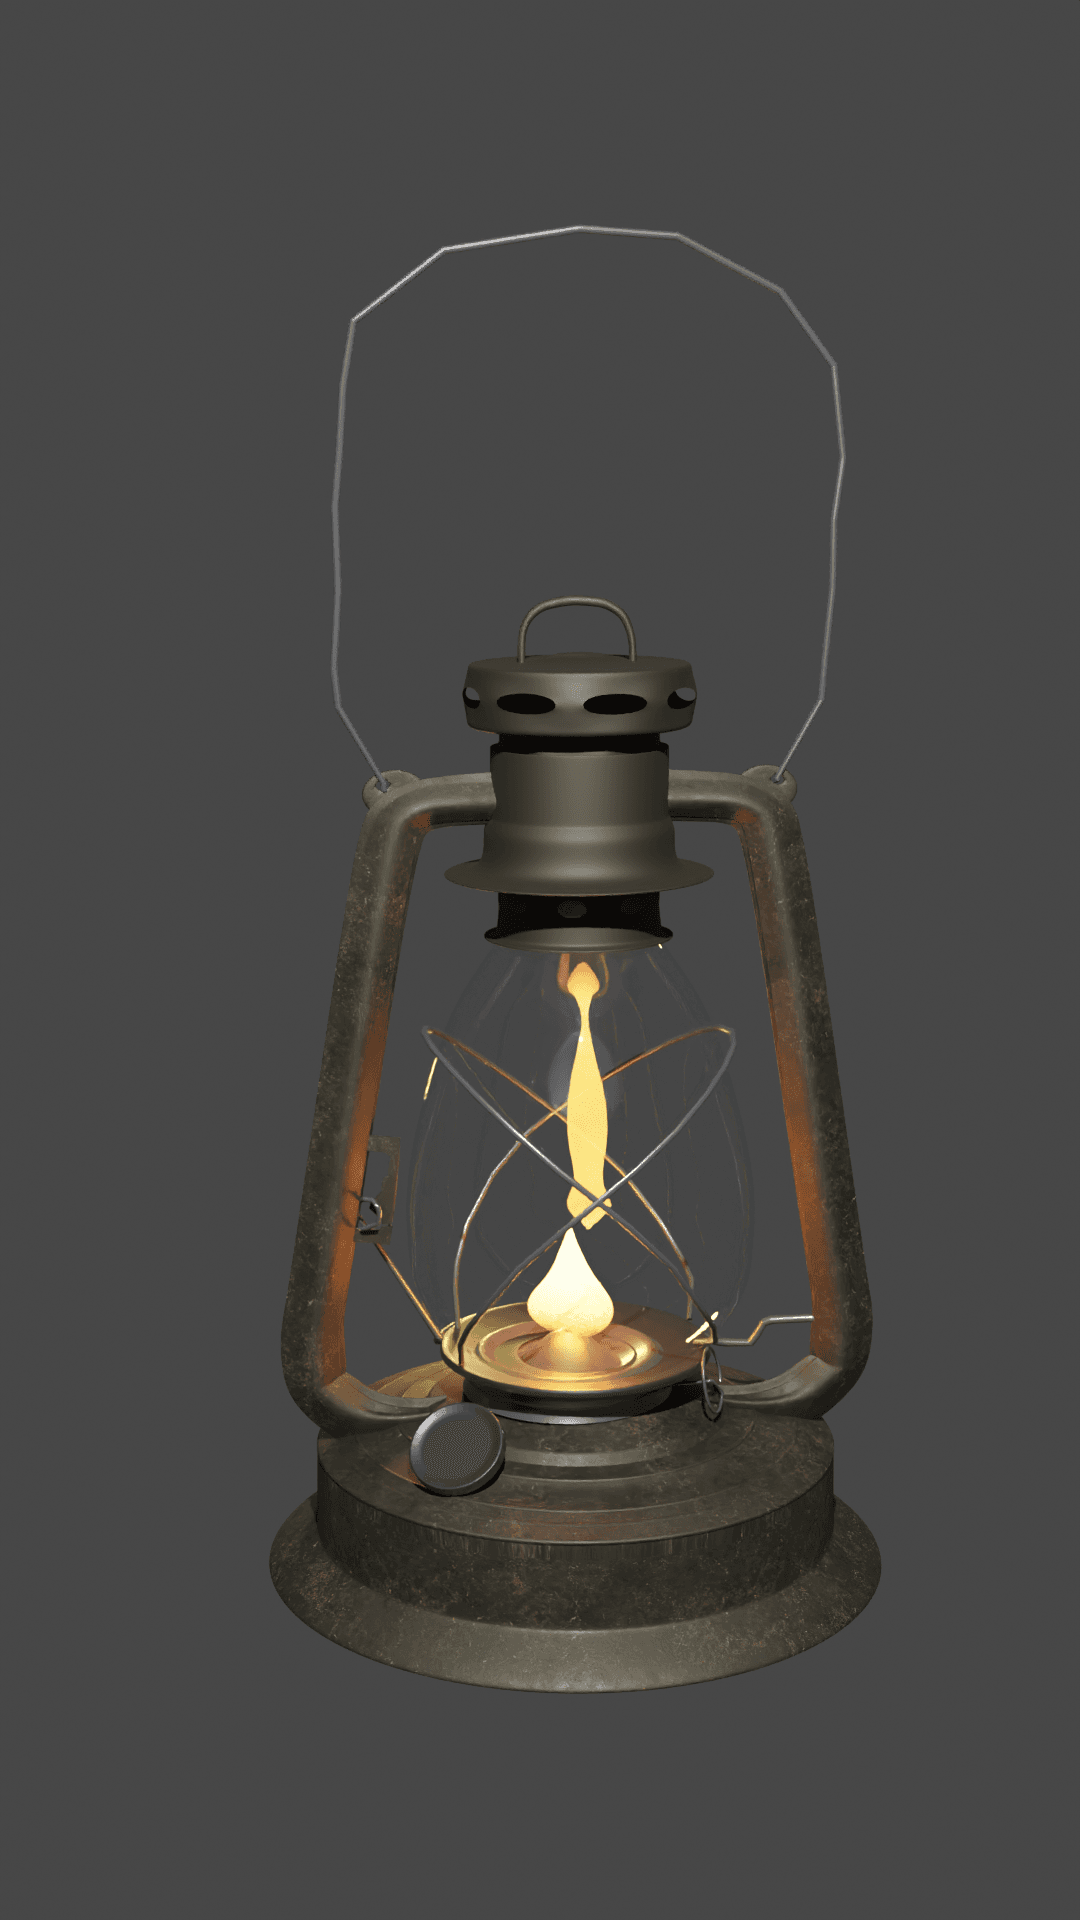 Forberedende navn udslettelse eksegese lantern 3d model.blend - 3D model by saeed.afridi91 on Thangs